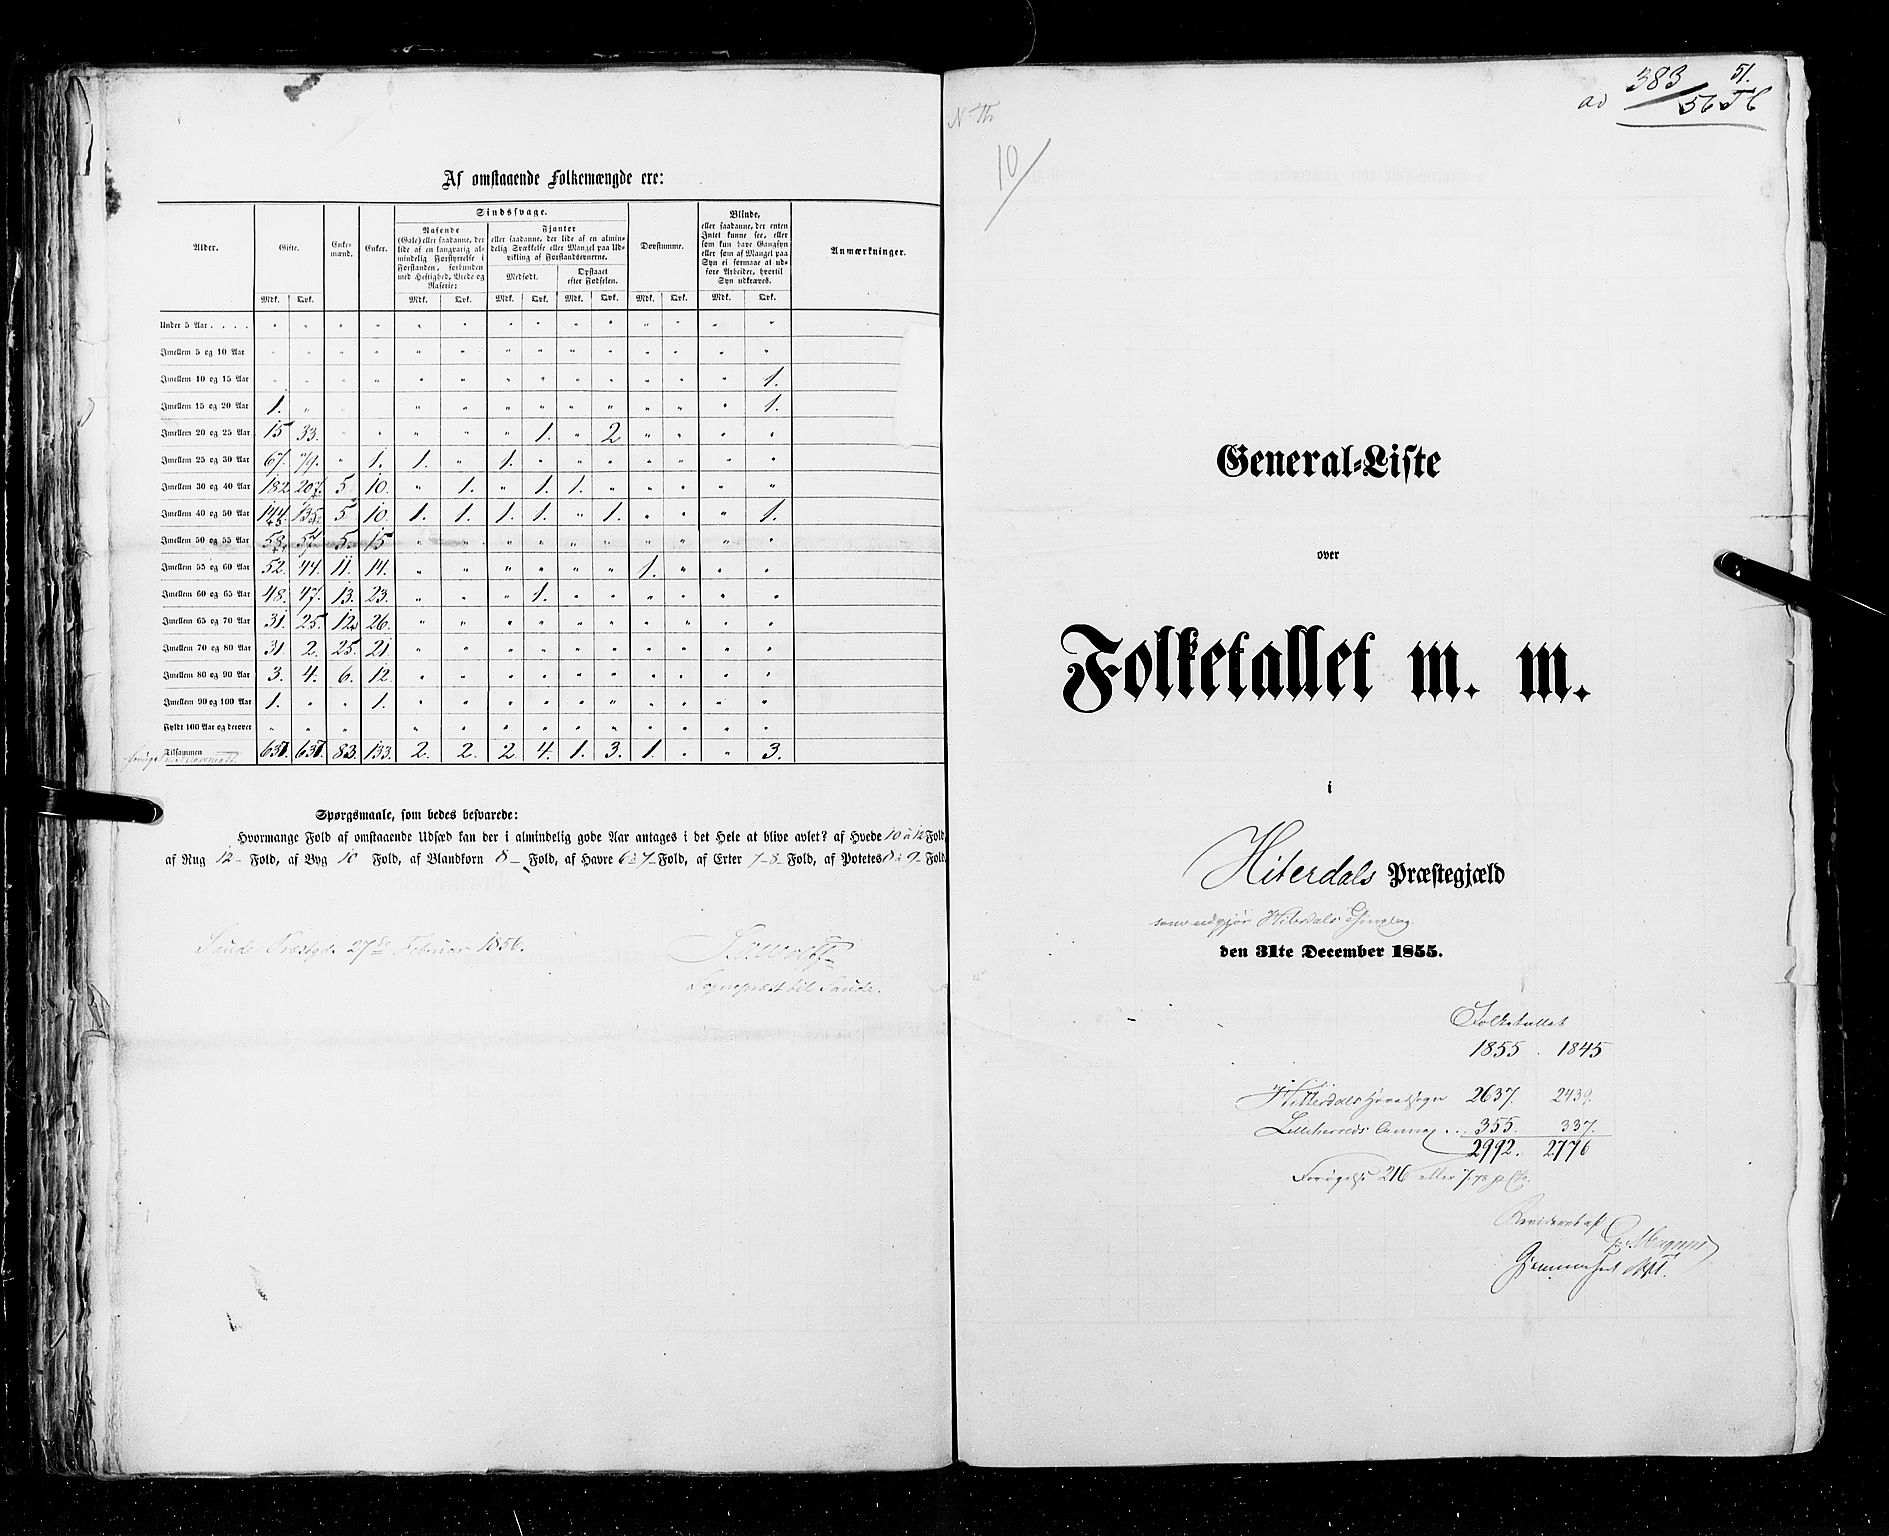 RA, Census 1855, vol. 3: Bratsberg amt, Nedenes amt og Lister og Mandal amt, 1855, p. 51